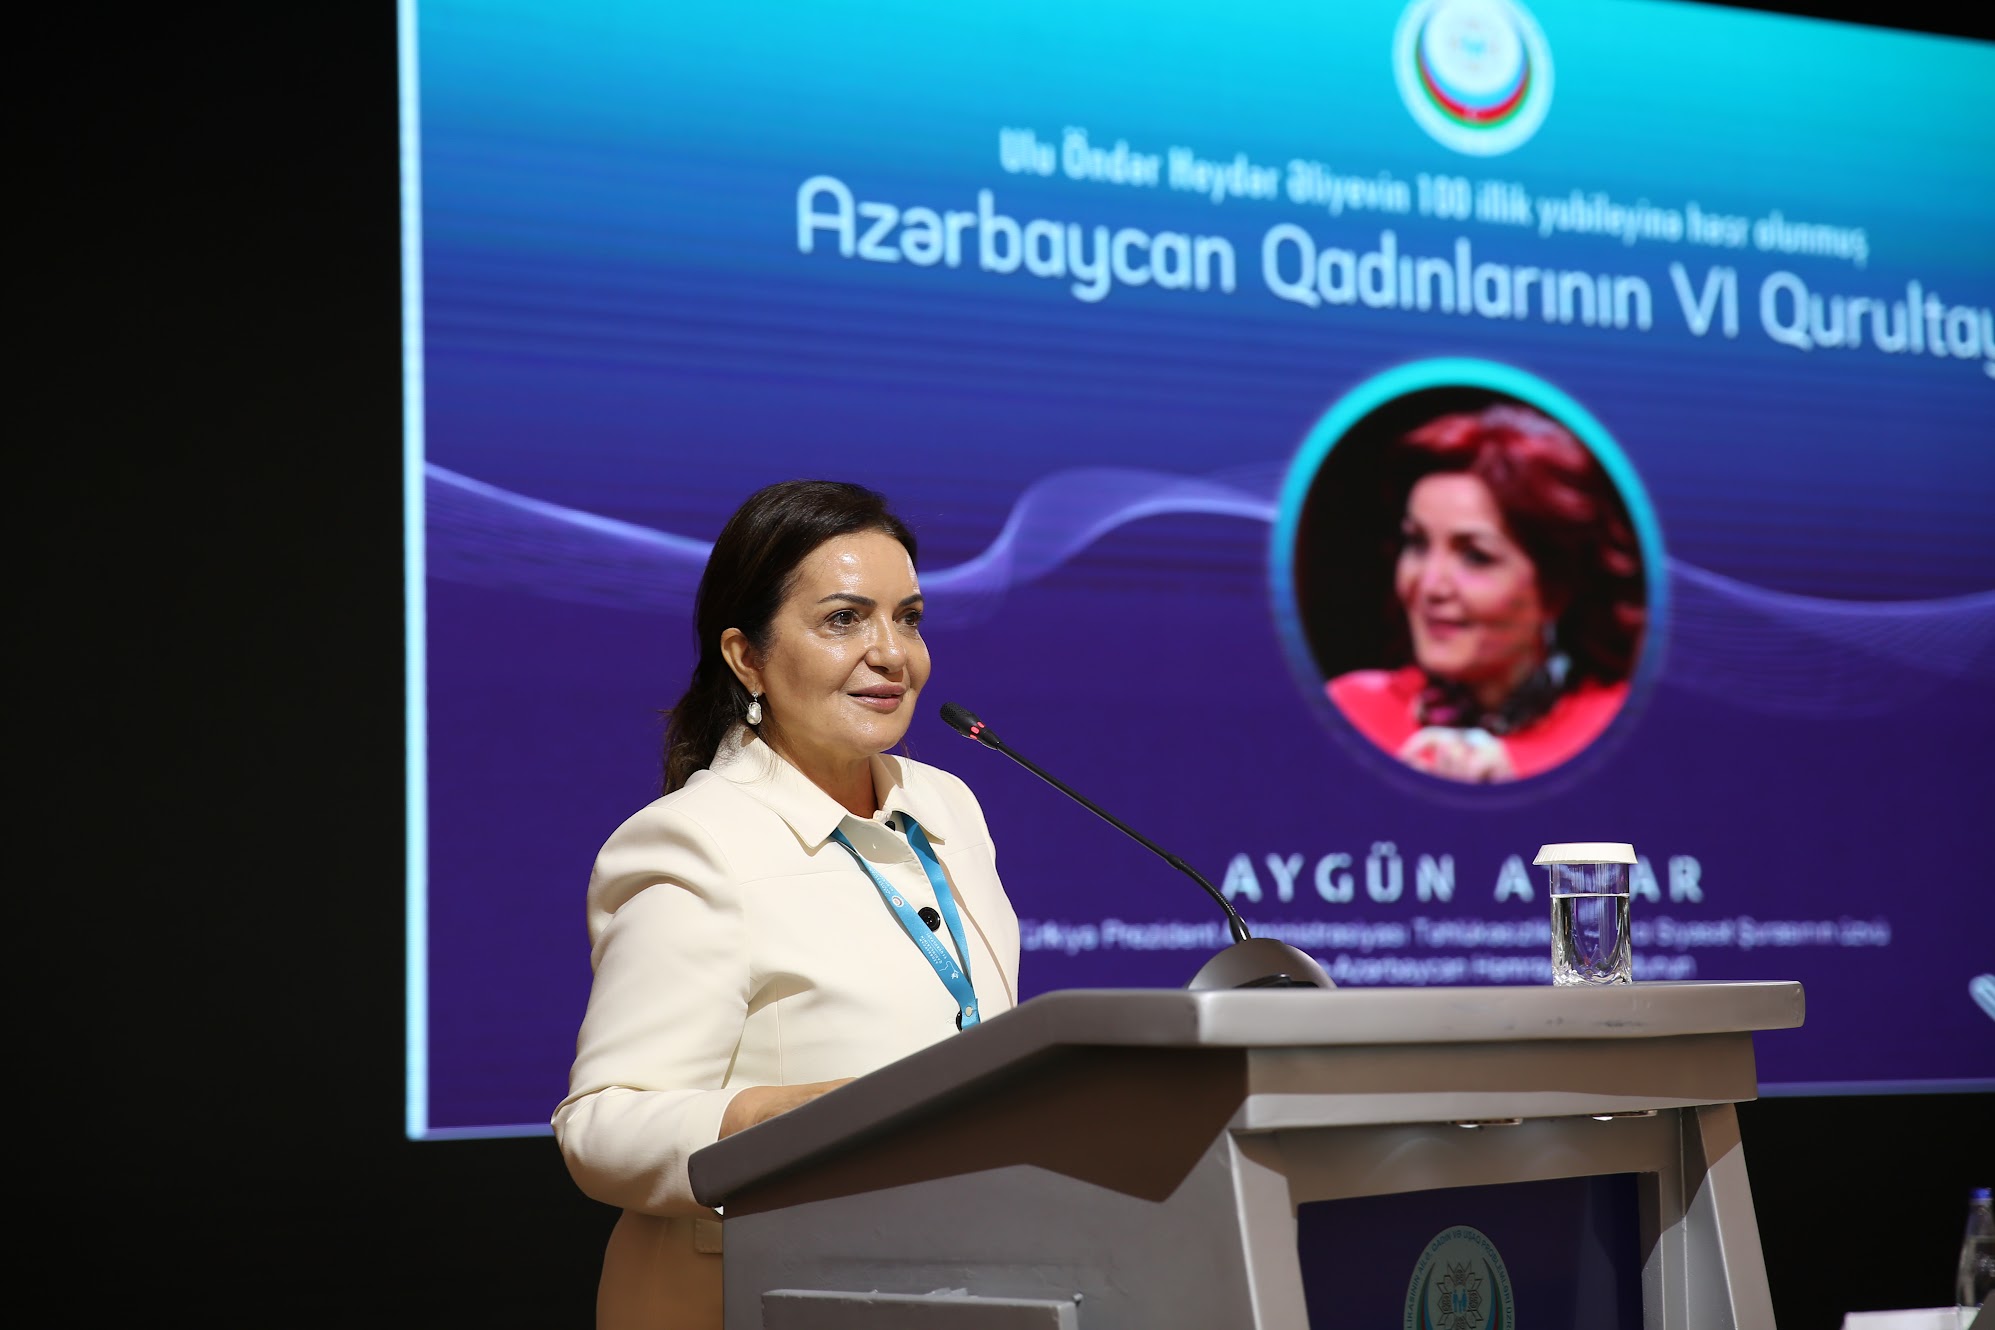 Azerbaycan Kadınlarının VI Forumu Bakü'de Düzenlendi